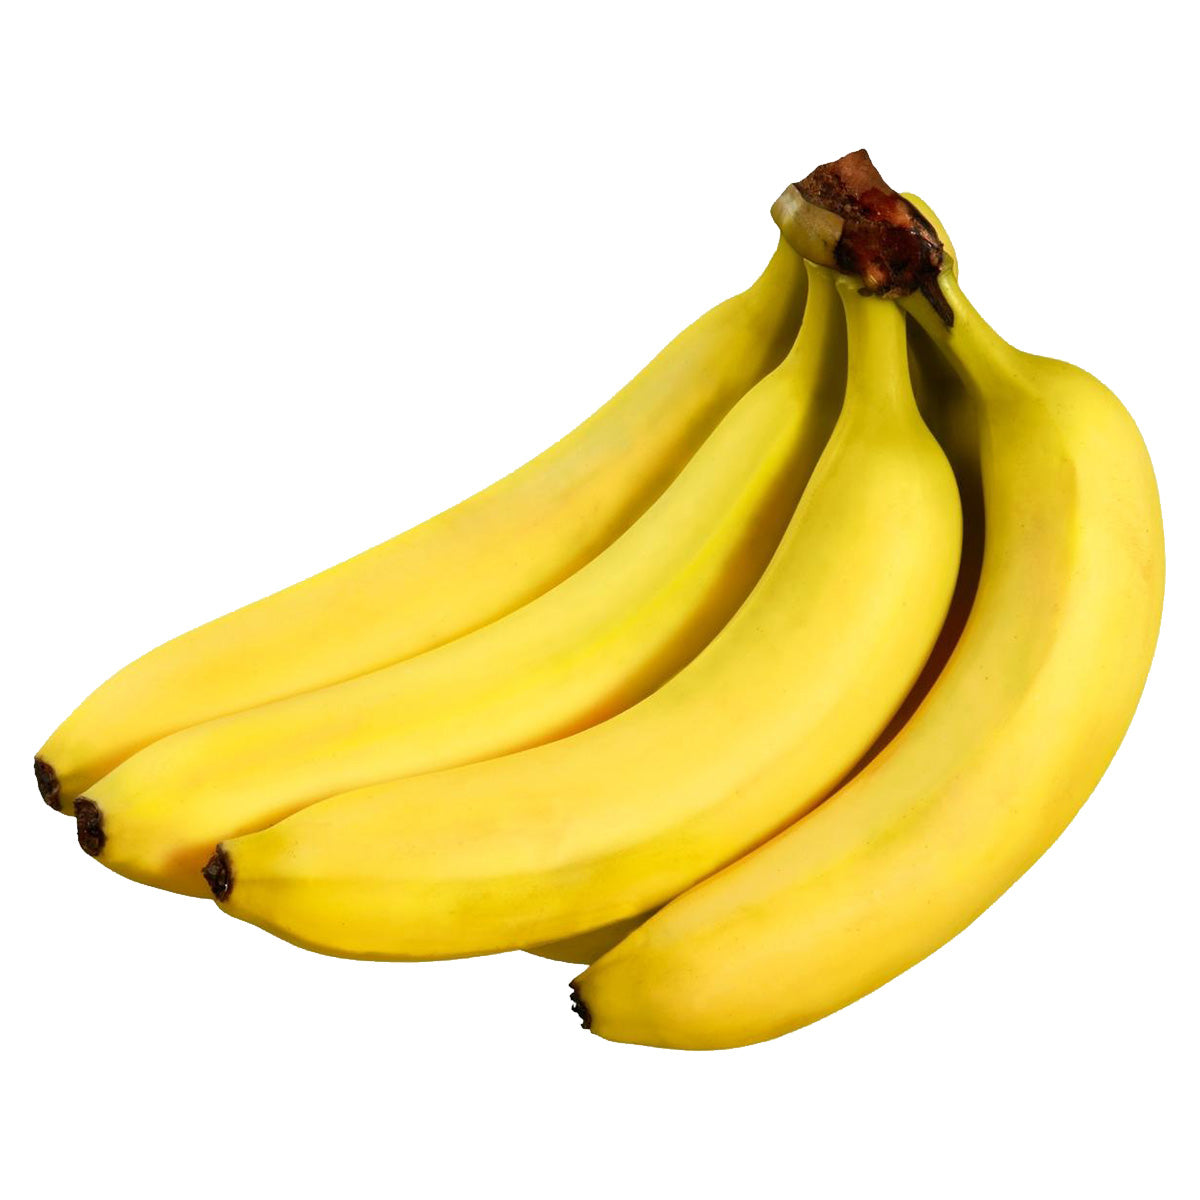 Banana - Loose - Continental Food Store